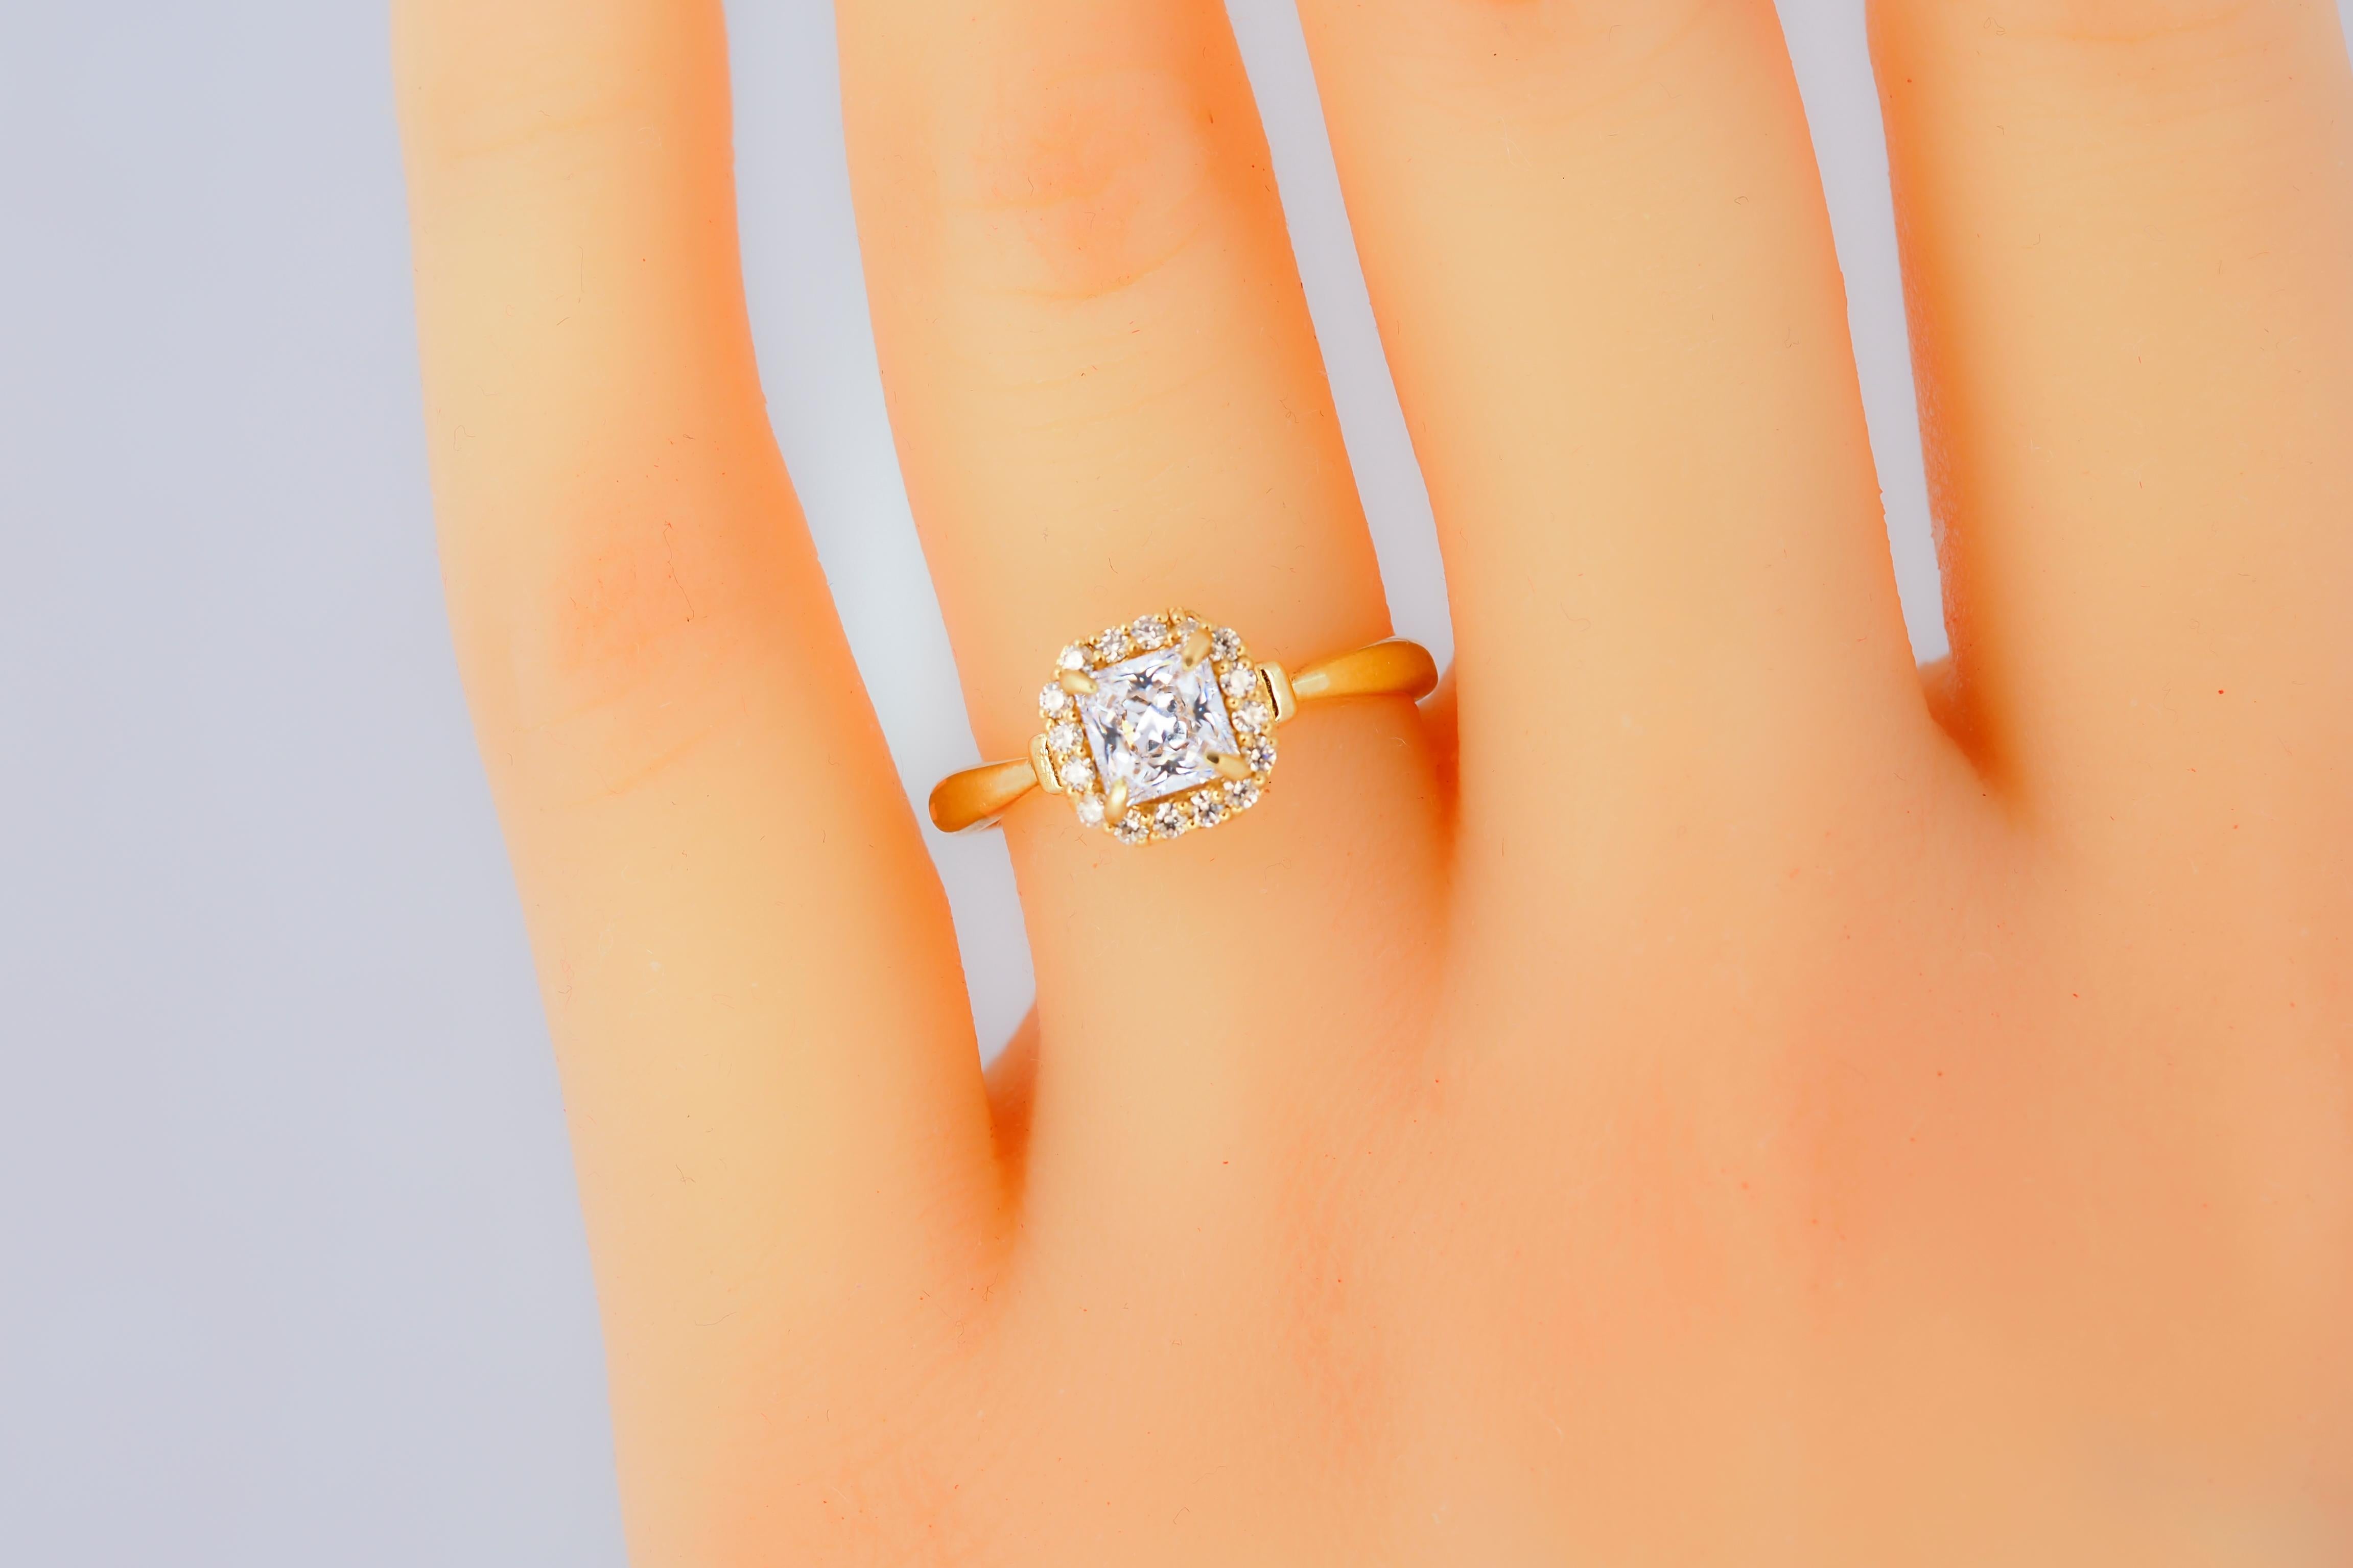 1 ct Prinzessinnenschliff Moissanit 14k Gold Ring. Diamantähnlicher Moissanit-Ring.  Moissanit-Verlobungsring im Prinzessinnenschliff. Solitär-Moissanit-Ring. 

Metall: 14k Gold
Gewicht: 2 g je nach Größe
Moissanit: Gewicht 1 ct, D/ VS,